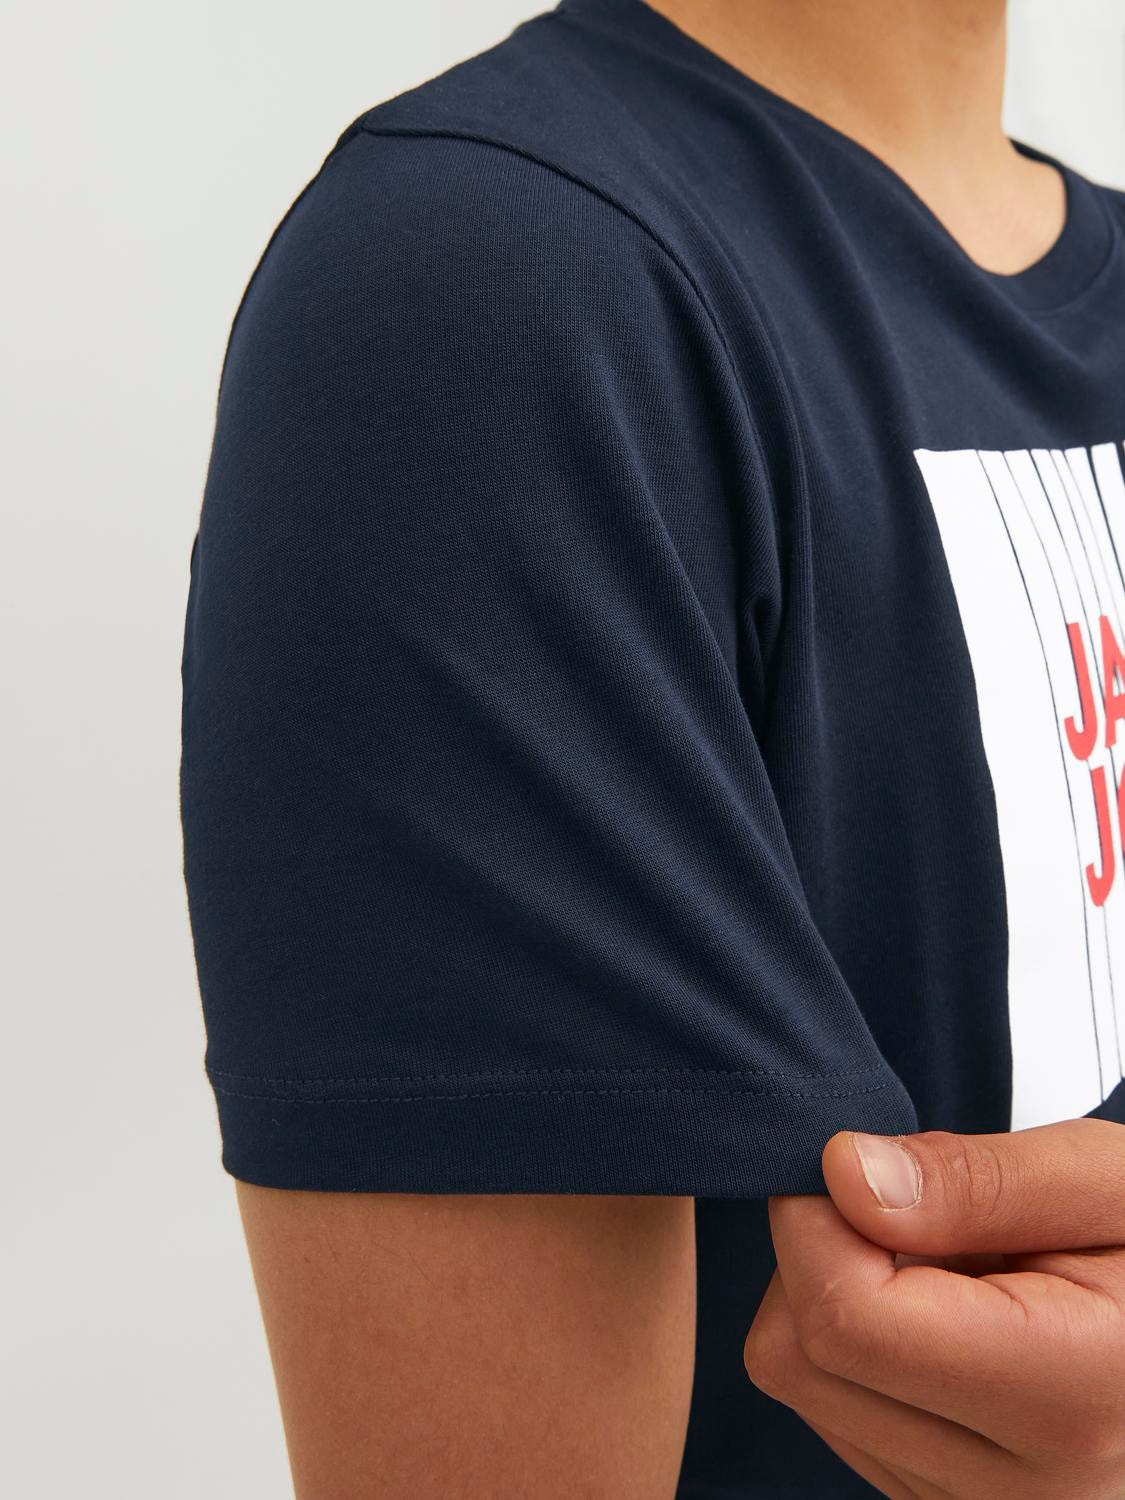 Jack & Jones T-shirt Imprimé Mini -Navy Blazer - 12257365